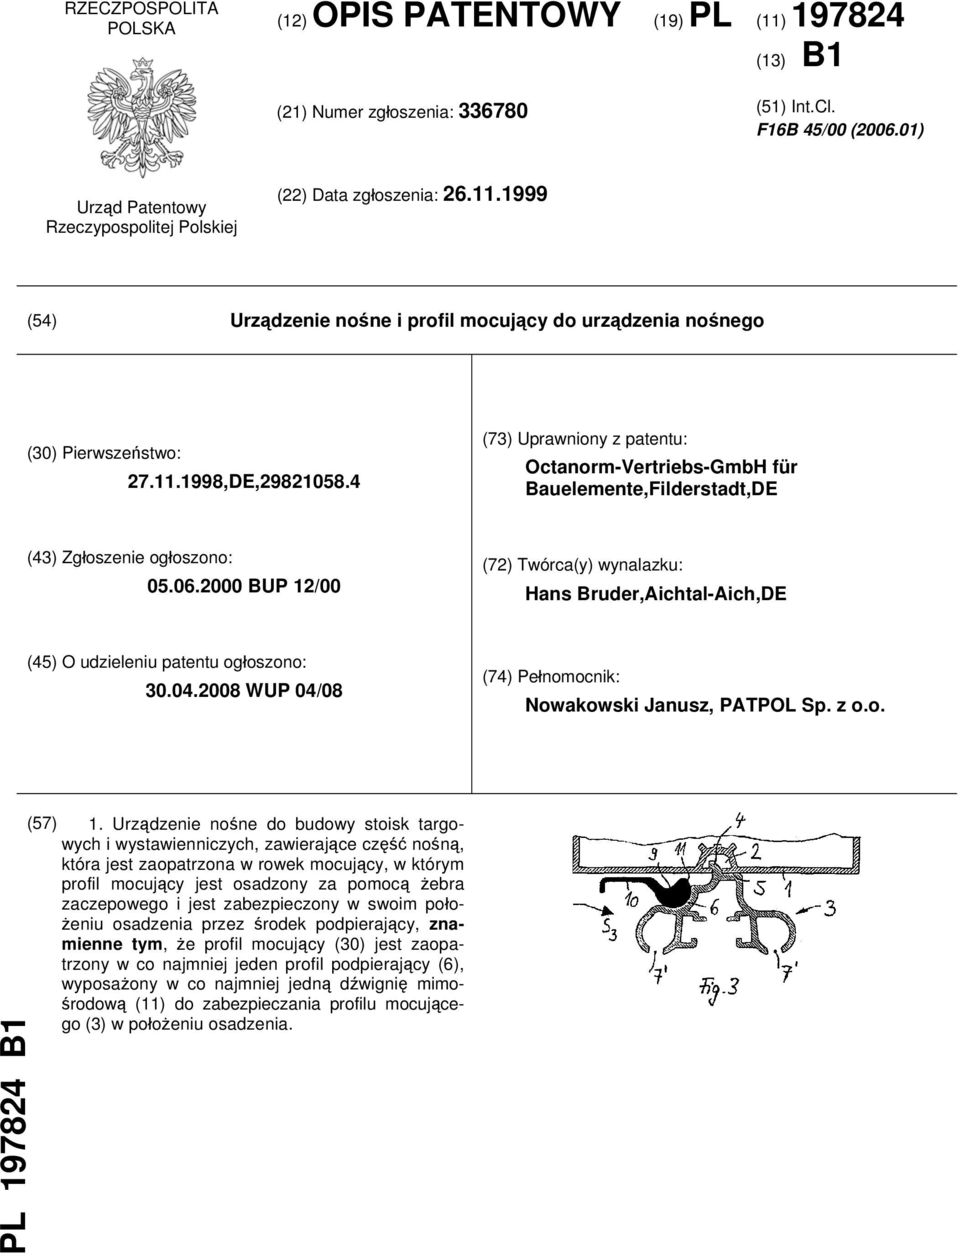 4 (73) Uprawniony z patentu: Octanorm-Vertriebs-GmbH für Bauelemente,Filderstadt,DE (43) Zgłoszenie ogłoszono: 05.06.